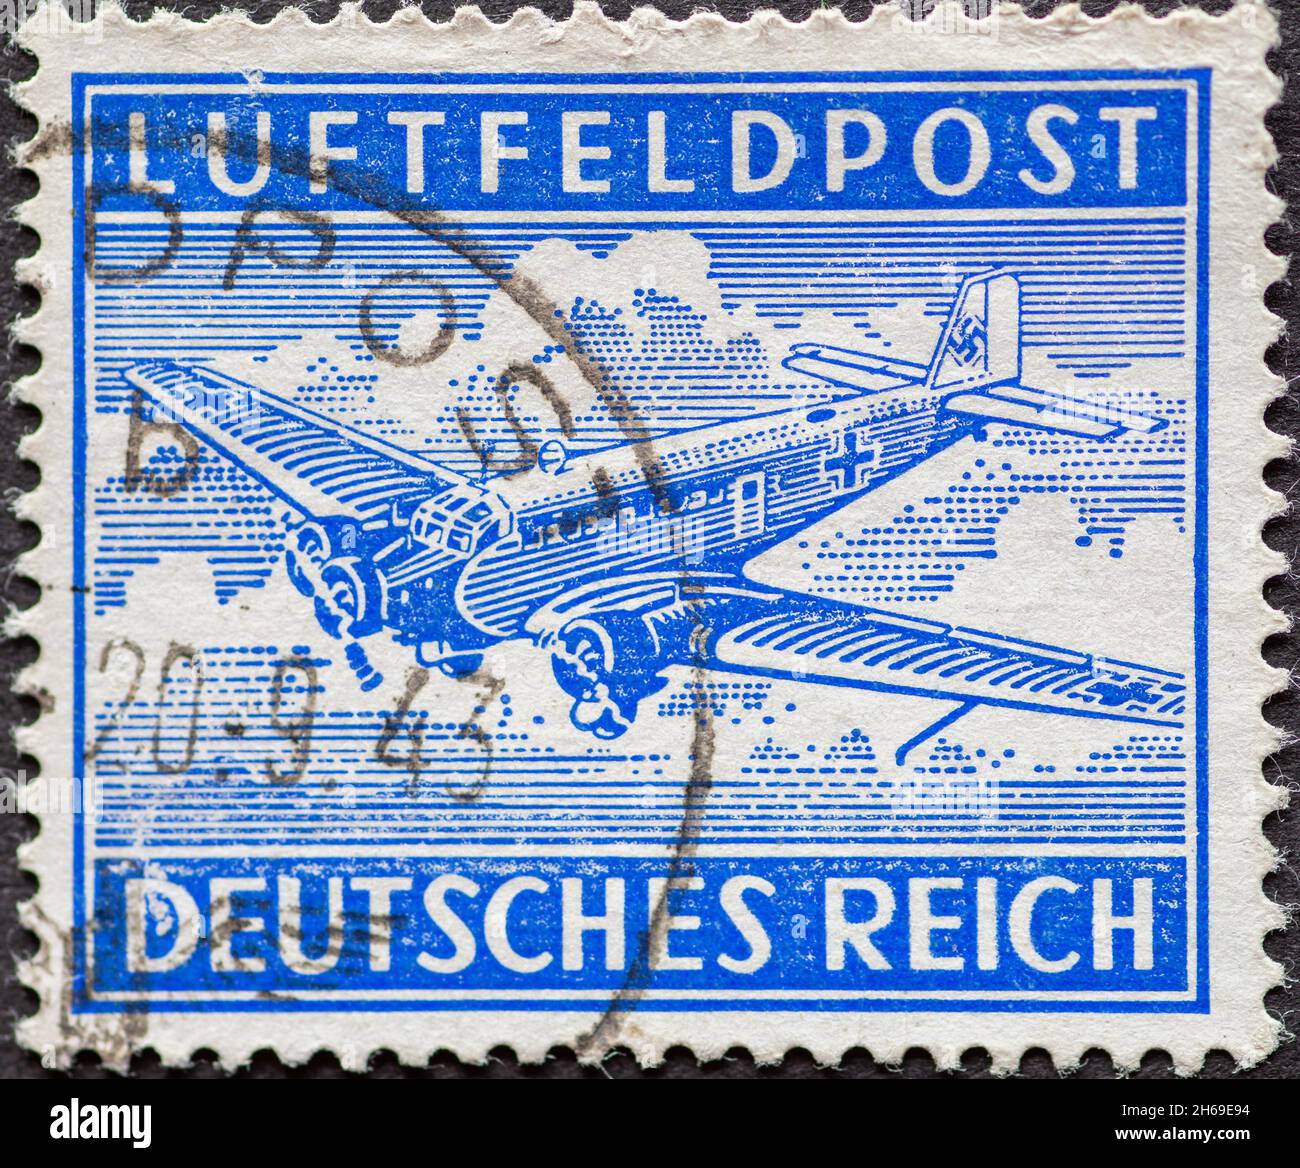 ALLEMAGNE - VERS 1942: Timbre-poste de l'Allemagne, pour le Feldpost (poste de guerre) via poste aérien montrant l'avion Junkers 52 en bleu Banque D'Images